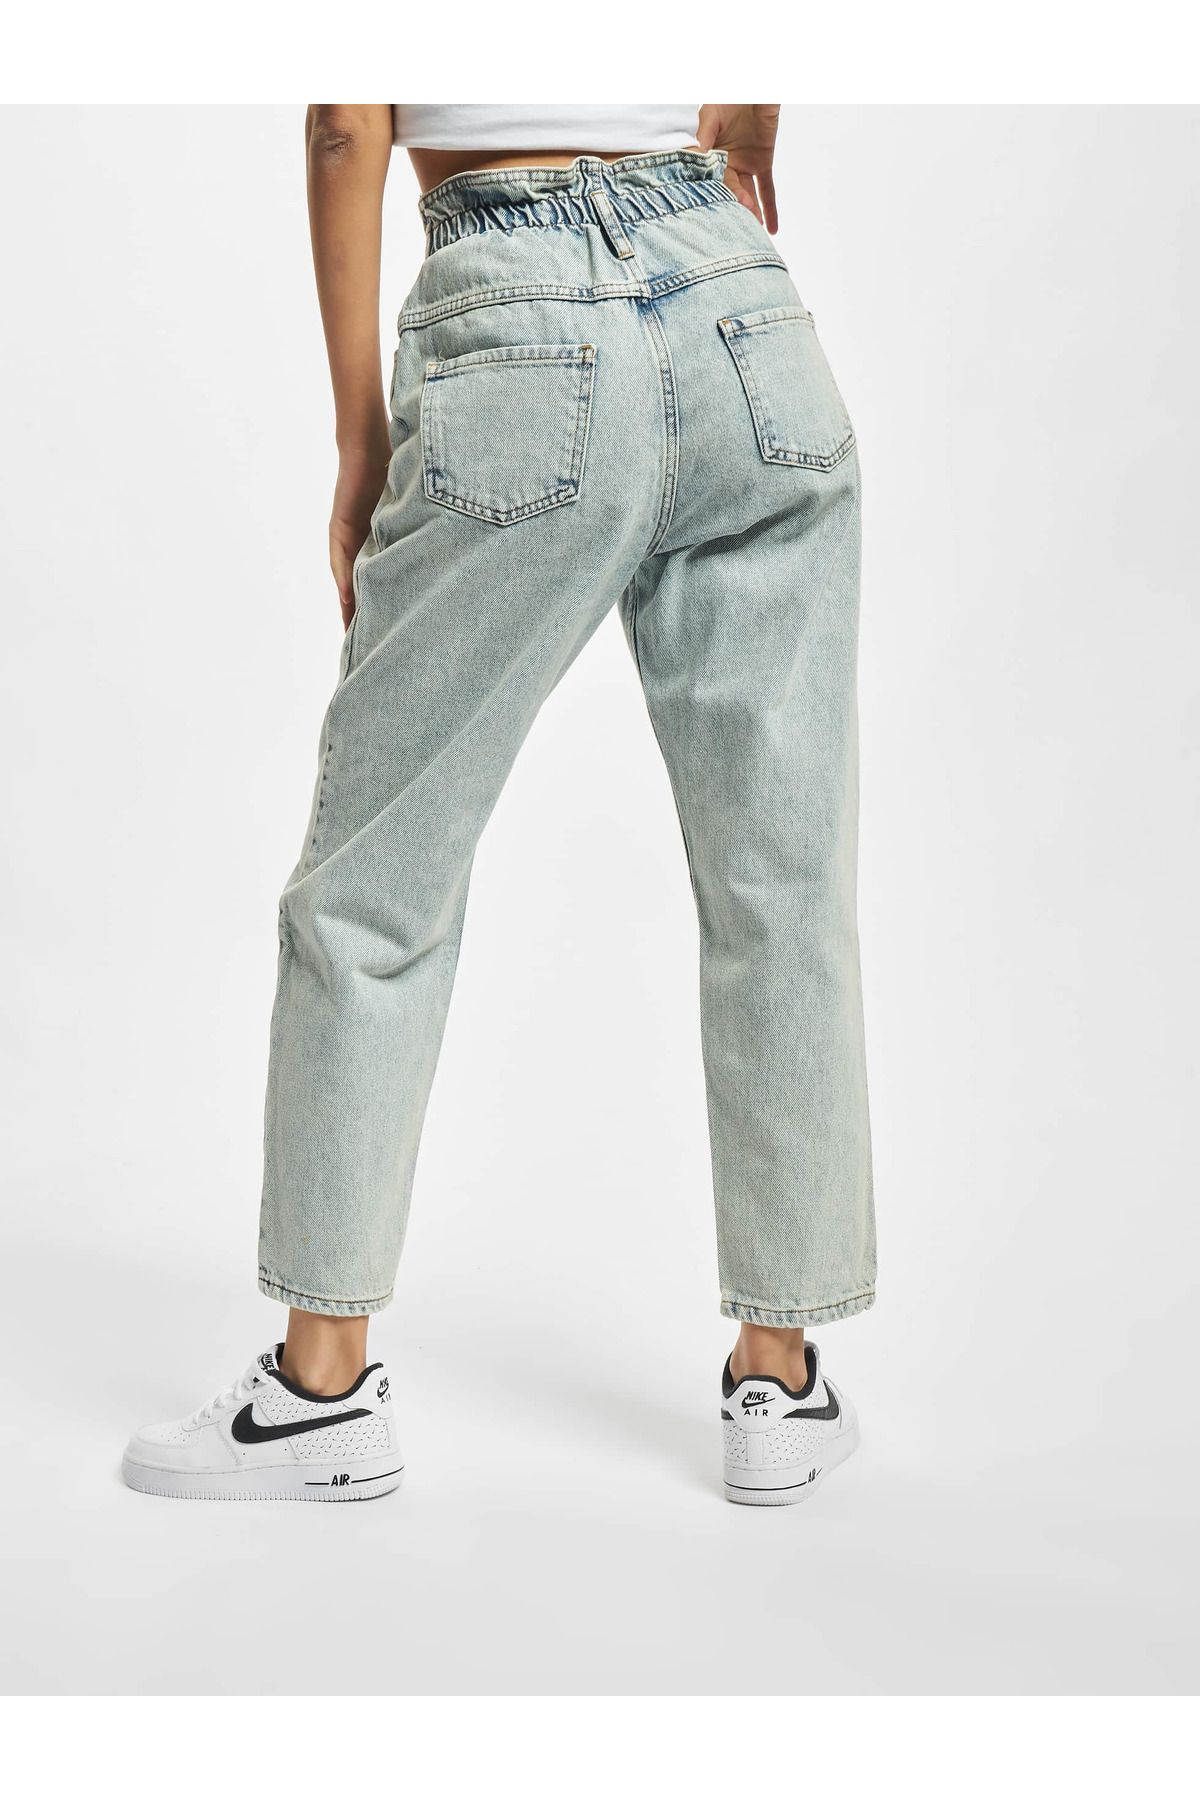 Jeans Blau - 2Y Trendyol - Straight -